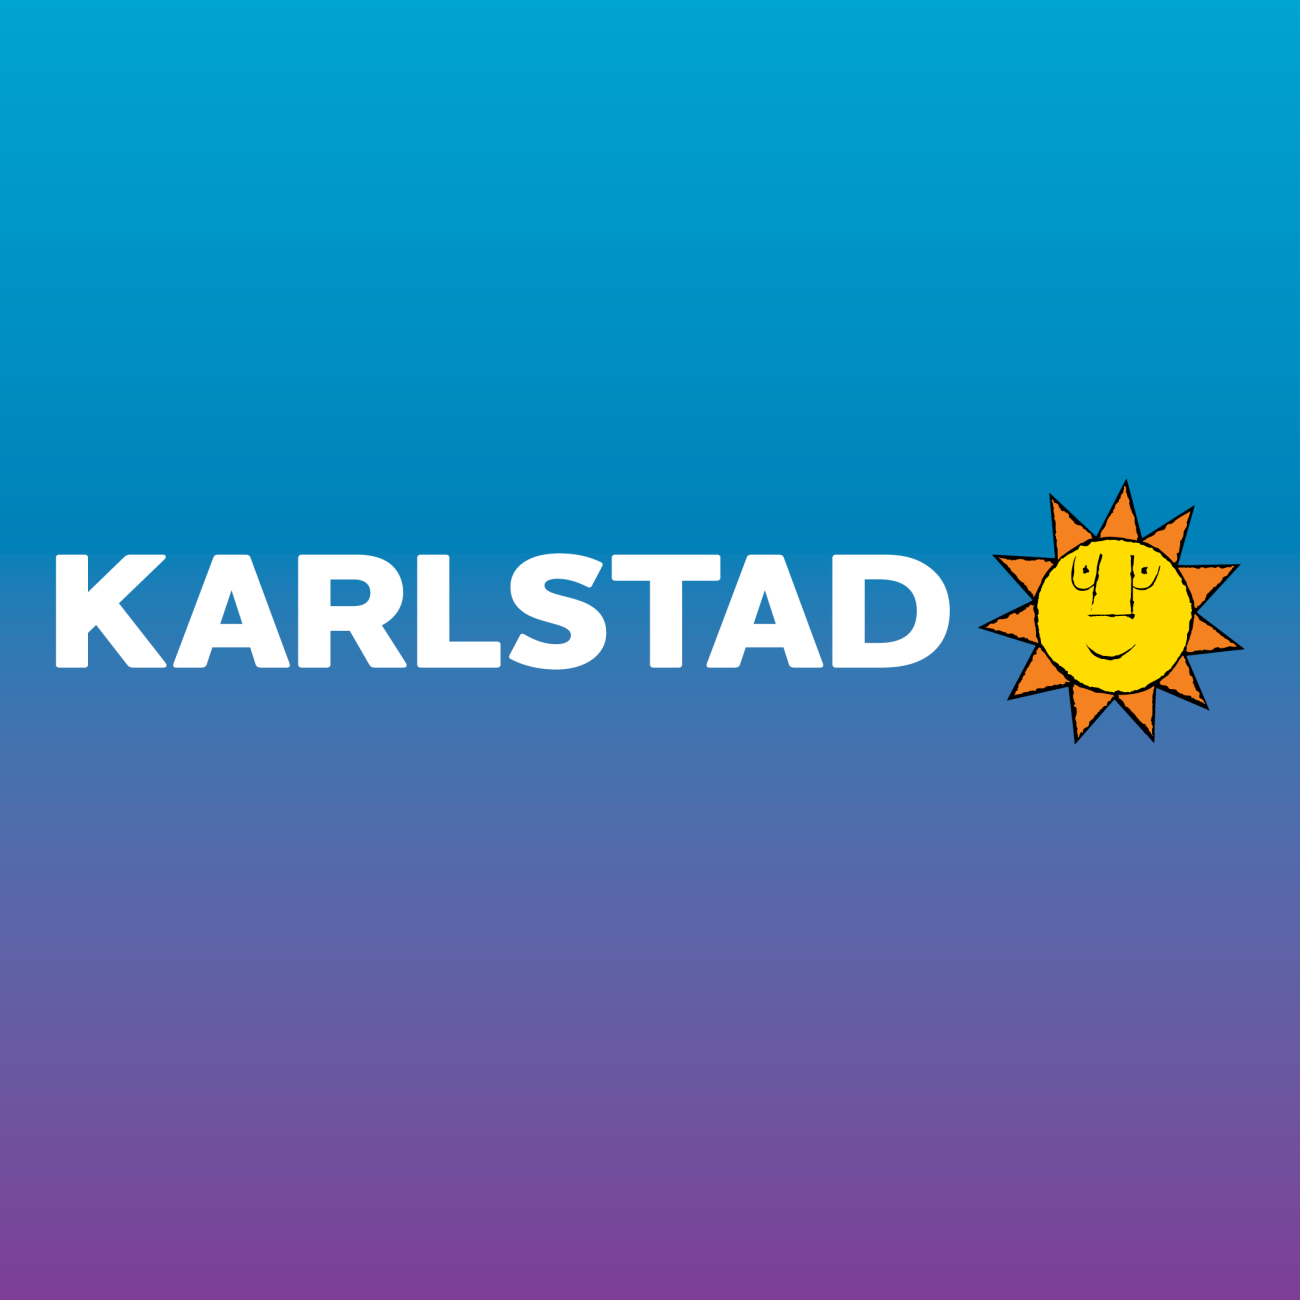 Platsvarumärkets logotyp med texten Karlstad och sol, på en gradientplatta